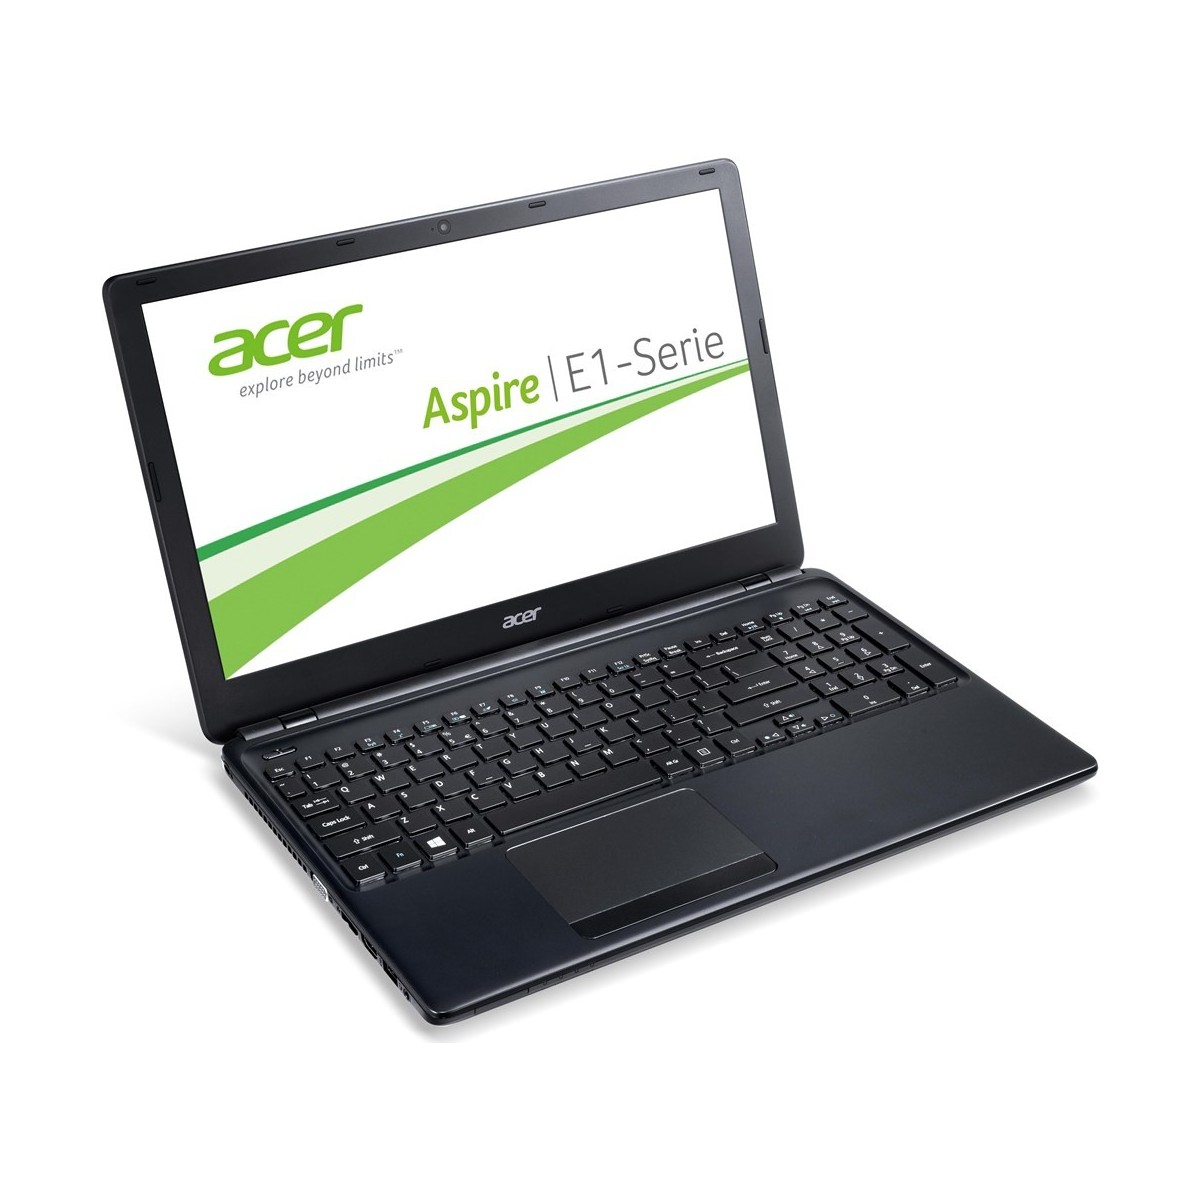 entonces Consejo Más ✓ Laptop Acer Aspire E1-572 15,6 Intel i5 1.6GHz 4GB RAM 750GB HDD ...